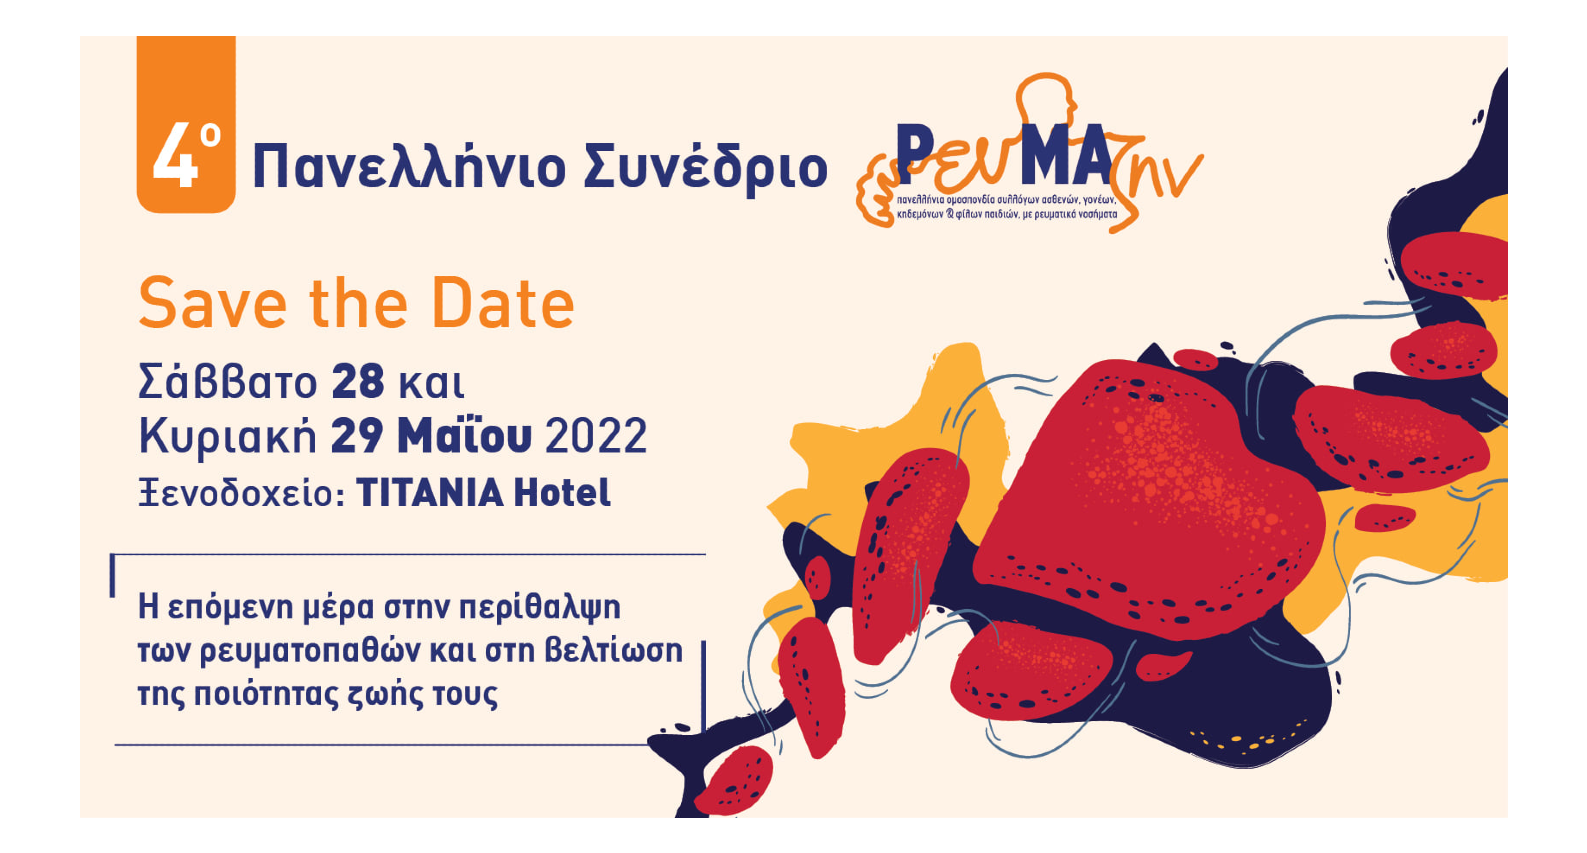 ΡευΜΑζήν: 4ο Πανελλήνιο Συνέδριο 28-29 Μαΐου στην Αθήνα